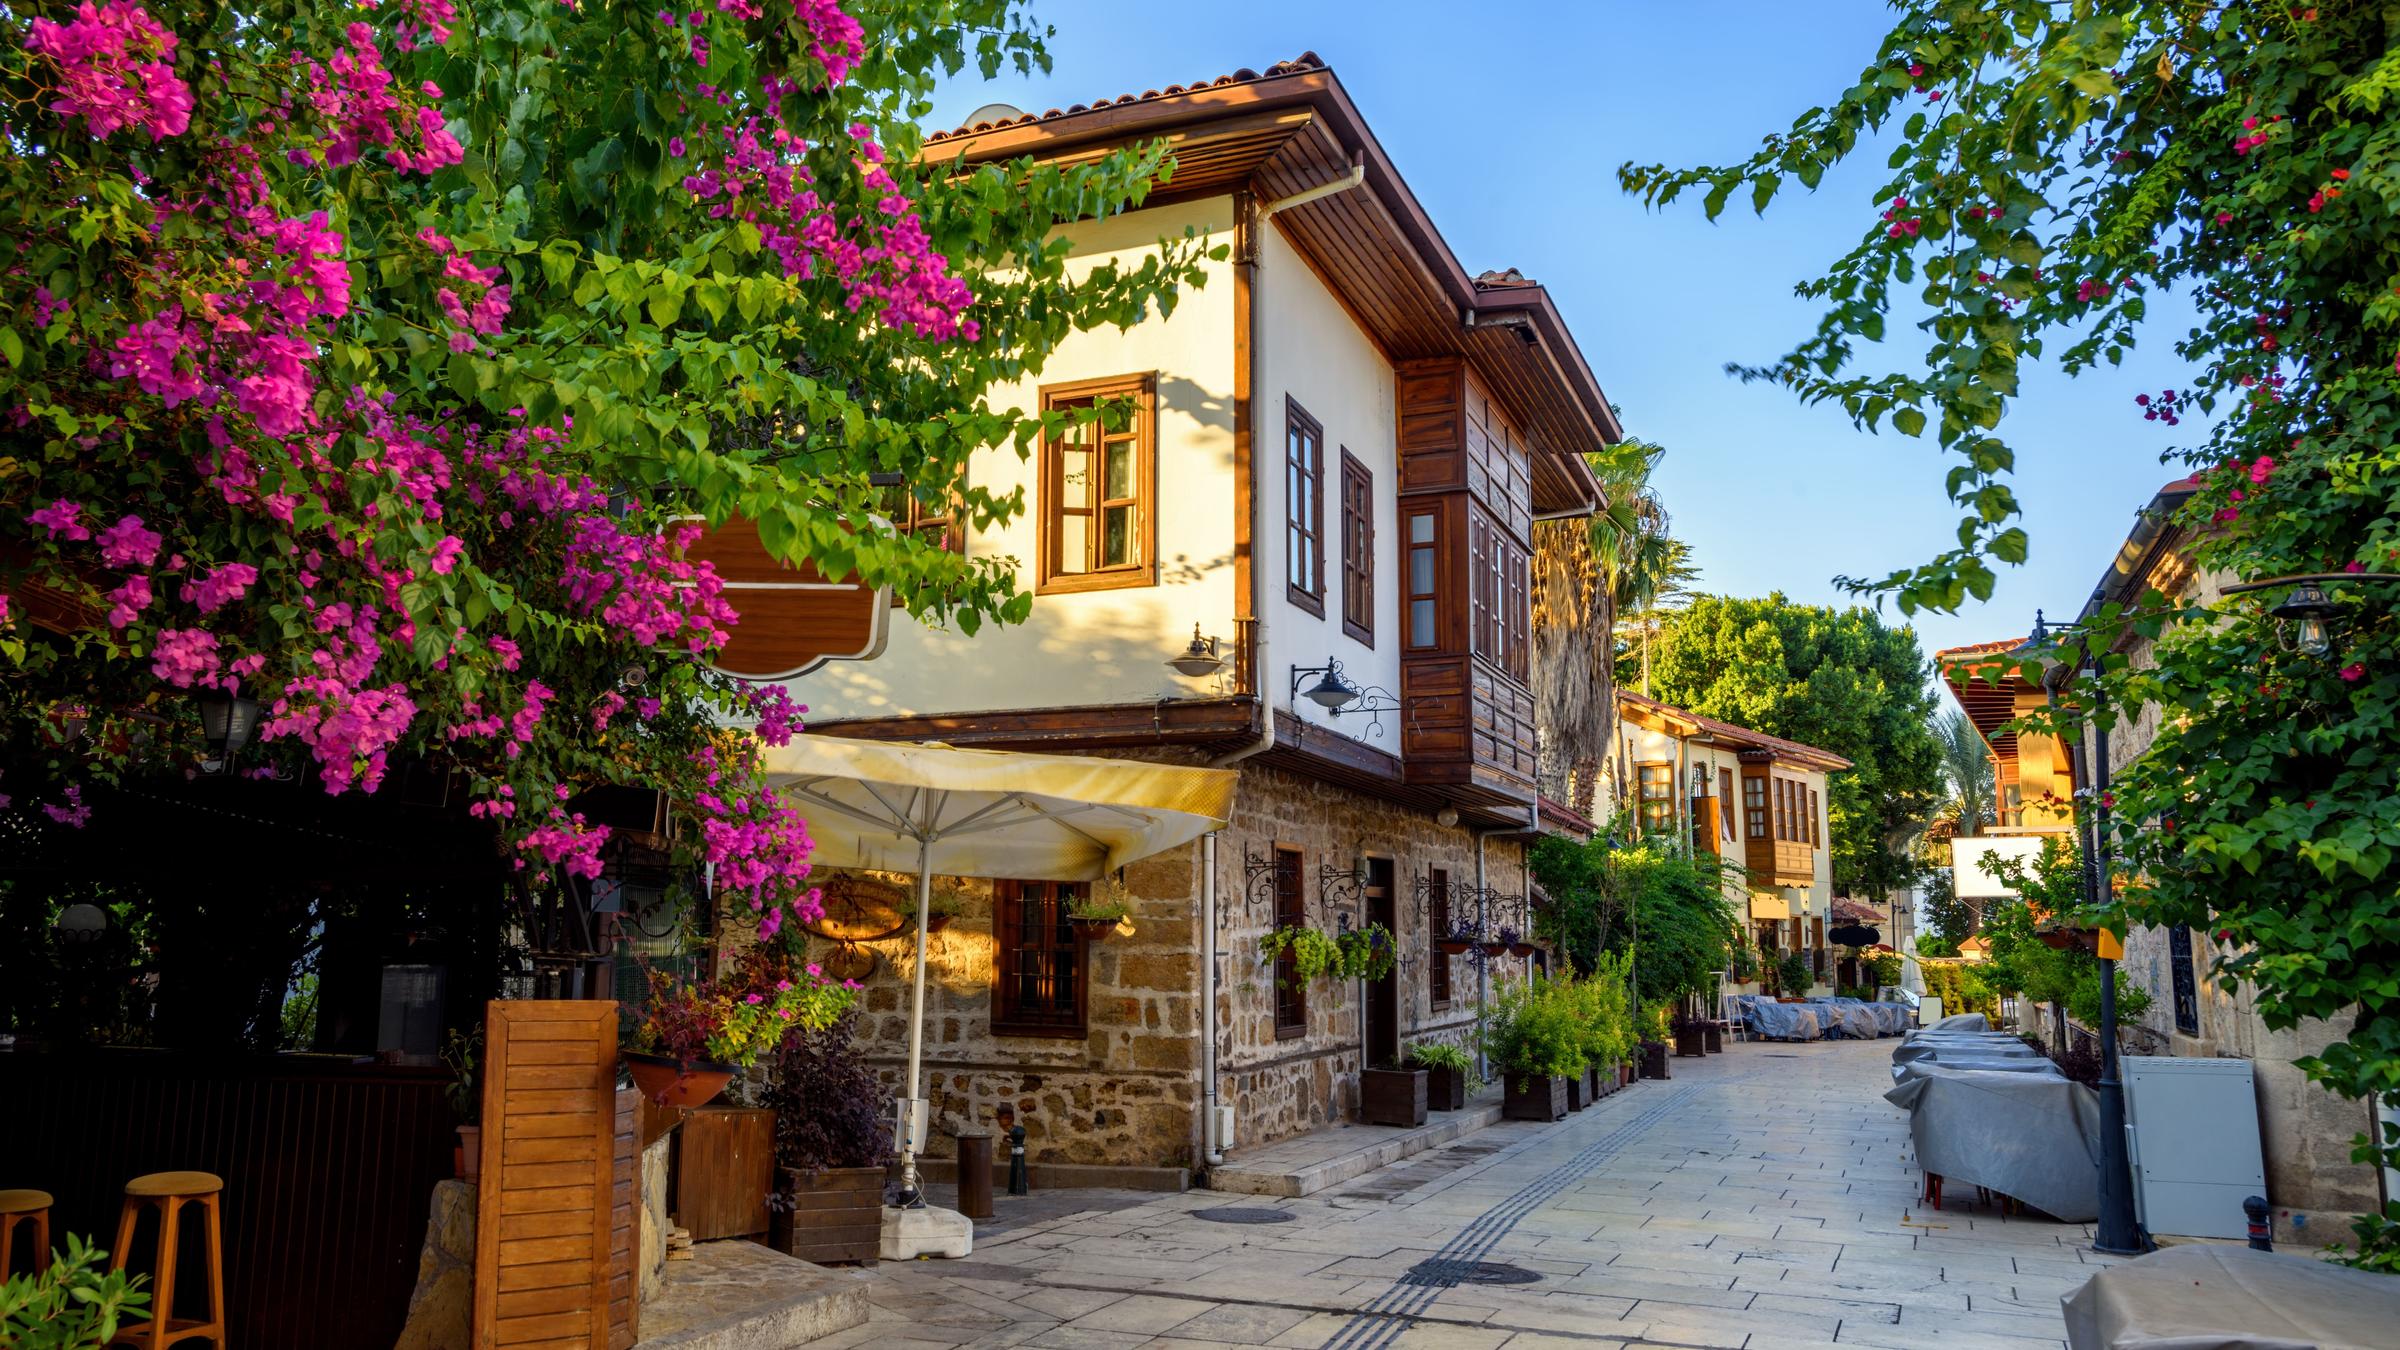 Antalya Old Town (Kaleici)